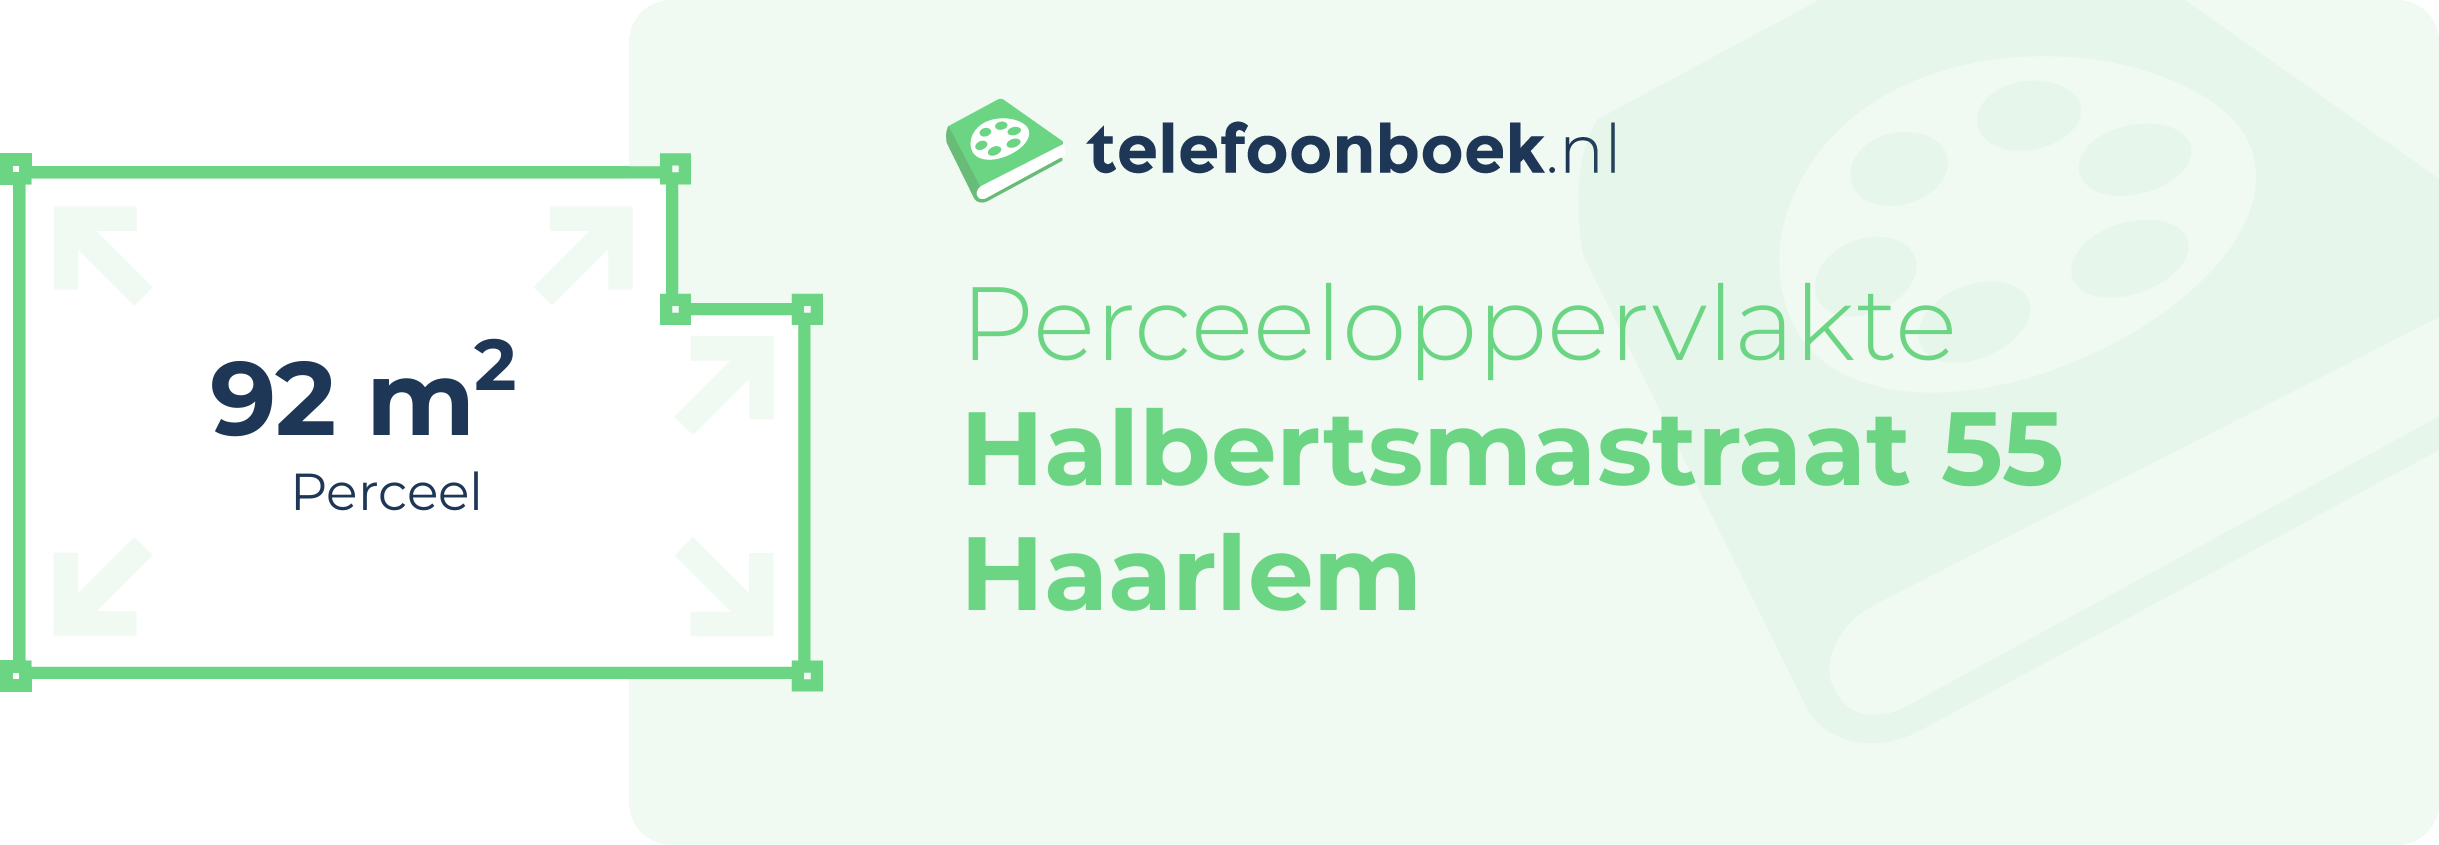 Perceeloppervlakte Halbertsmastraat 55 Haarlem